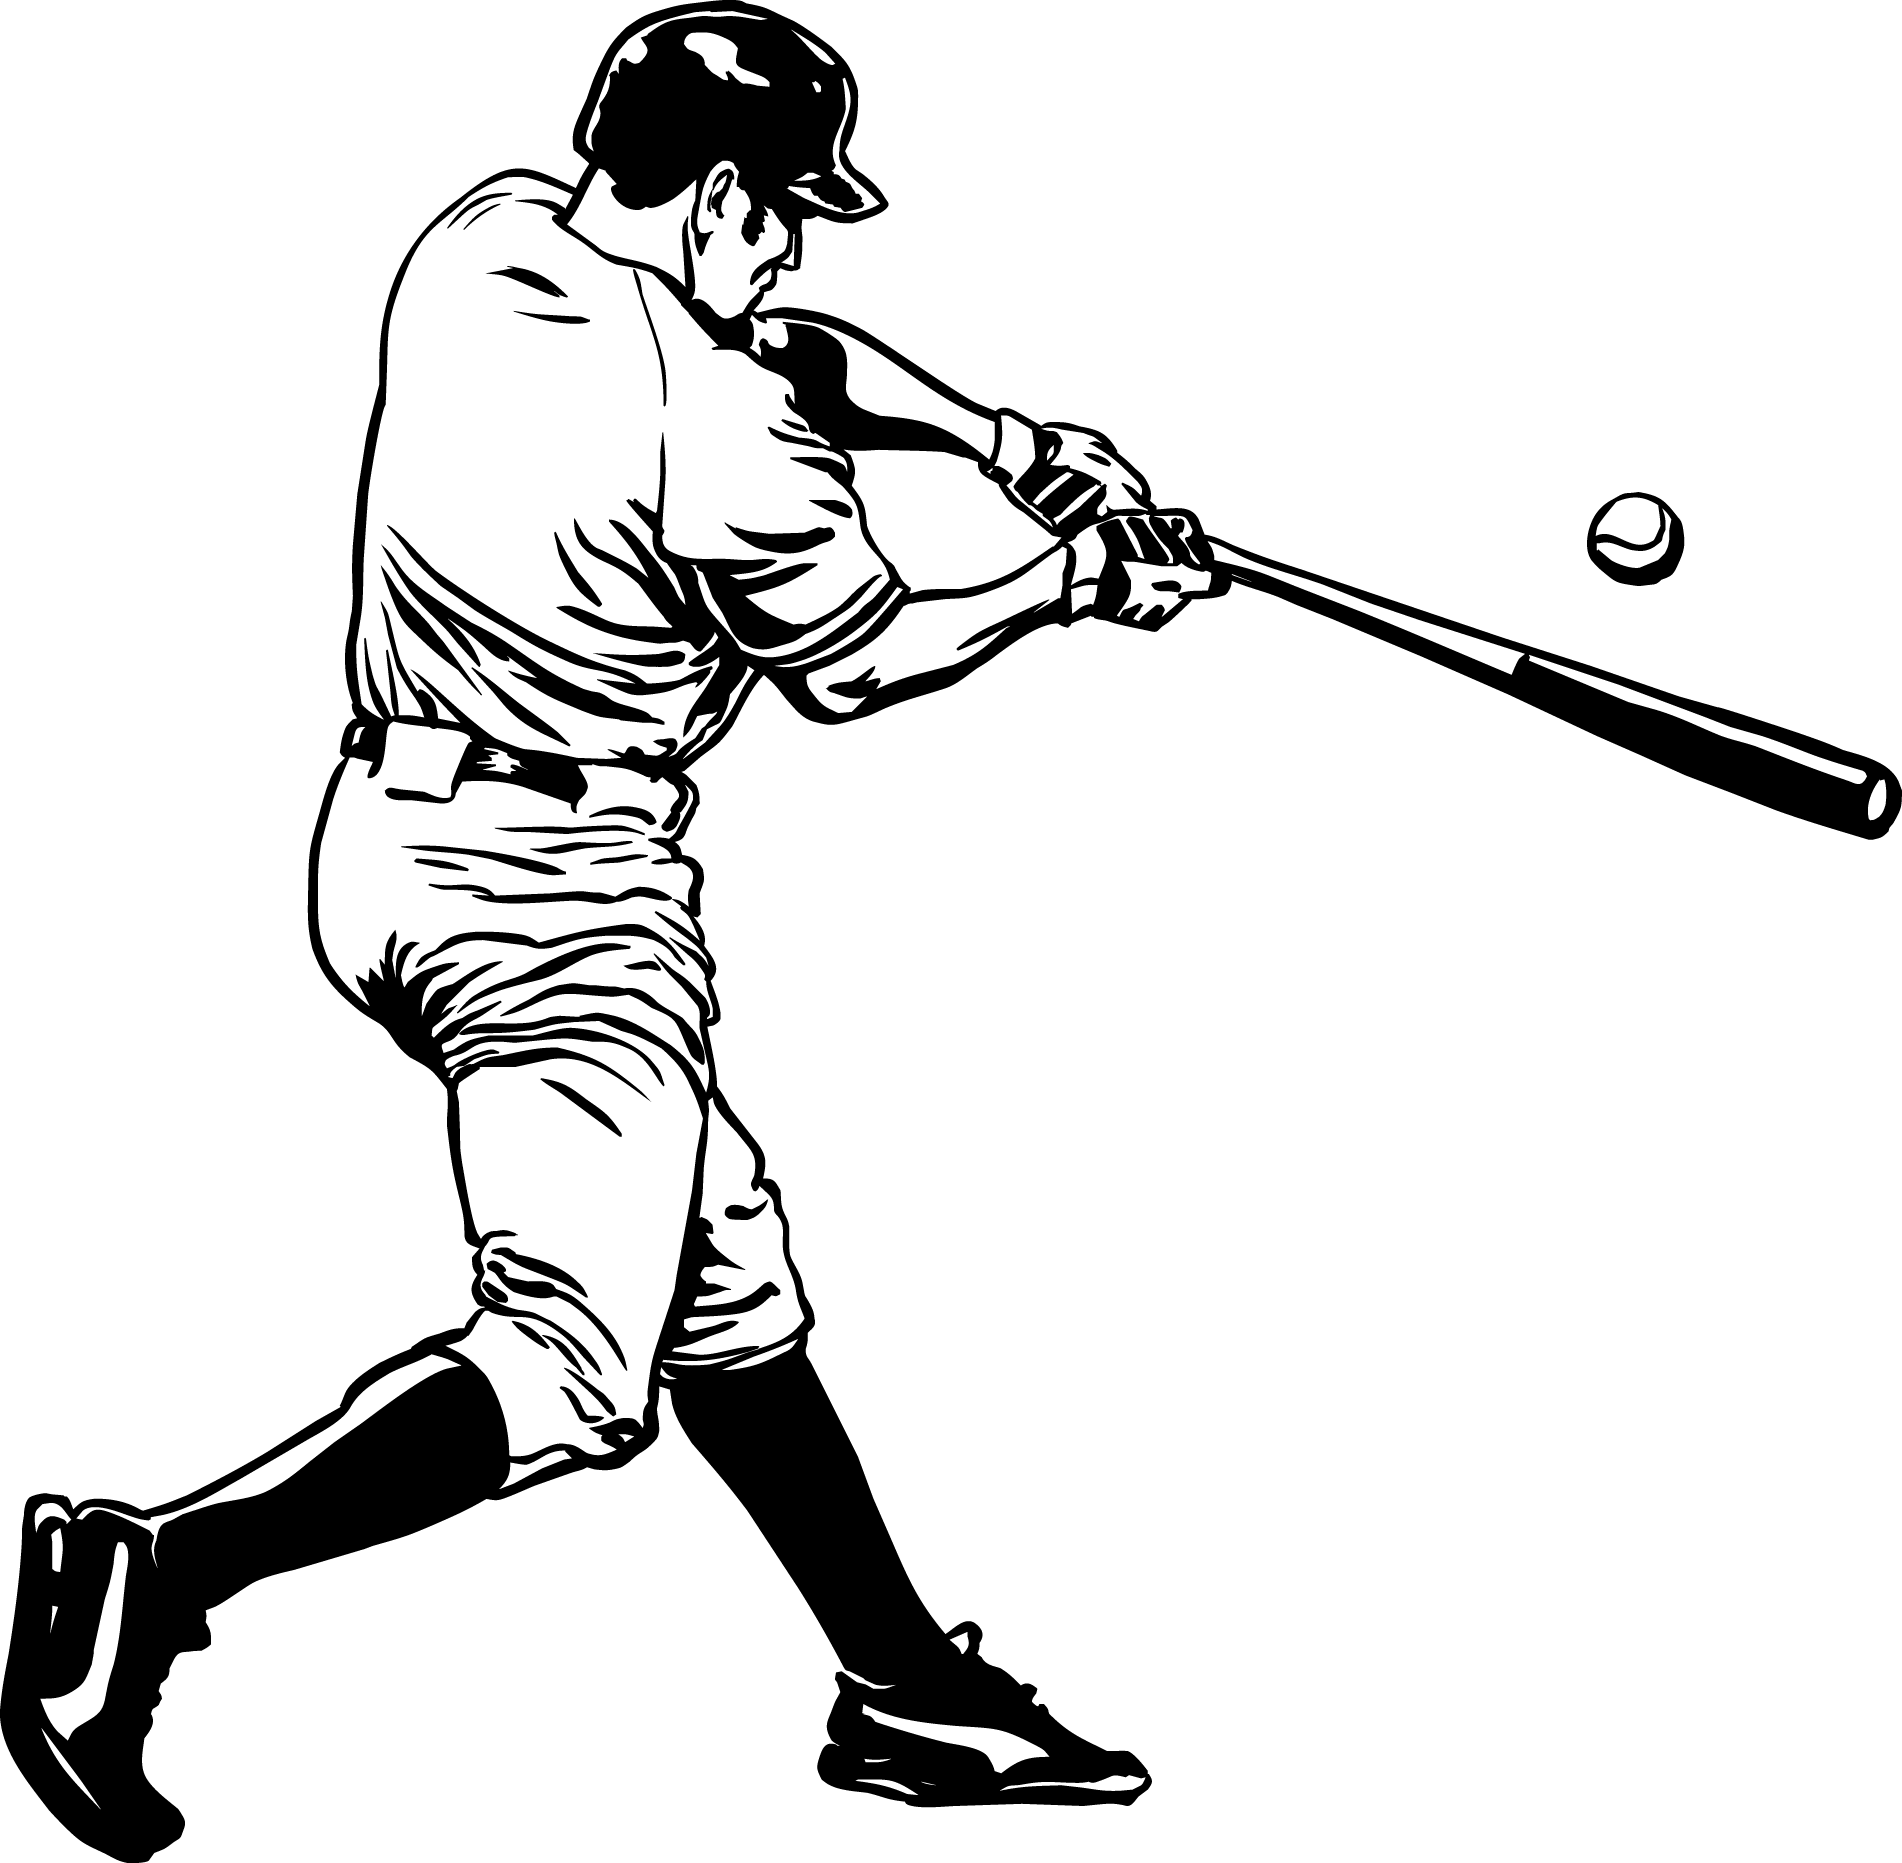 Mlb Baseball Player Batting - Baseball Vector (1902x1863)